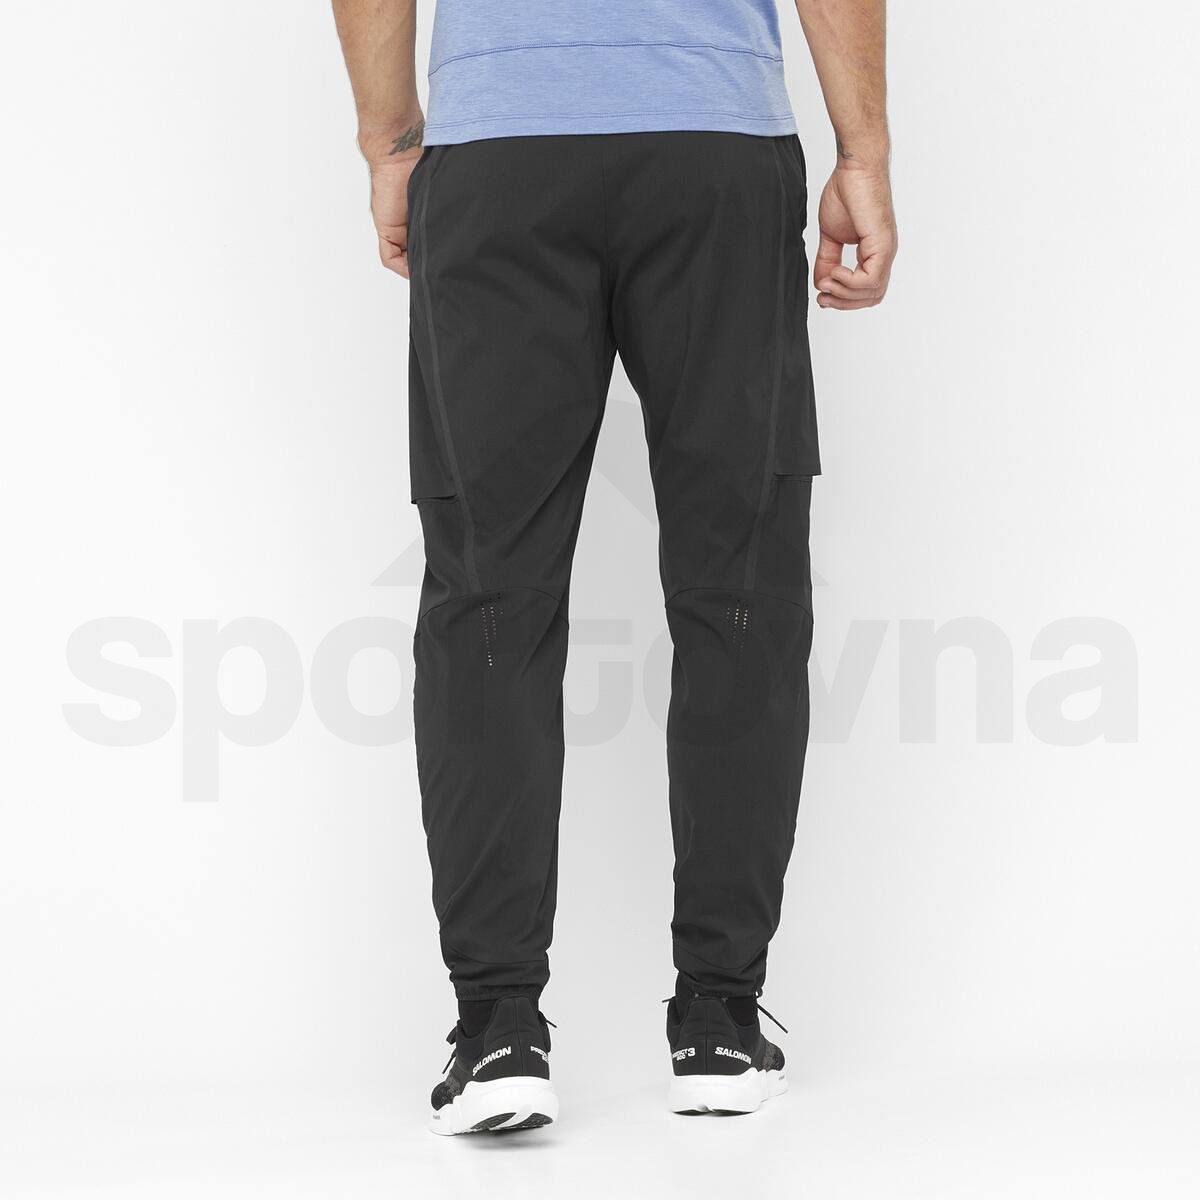 Kalhoty Salomon Runlife Pants M - černá